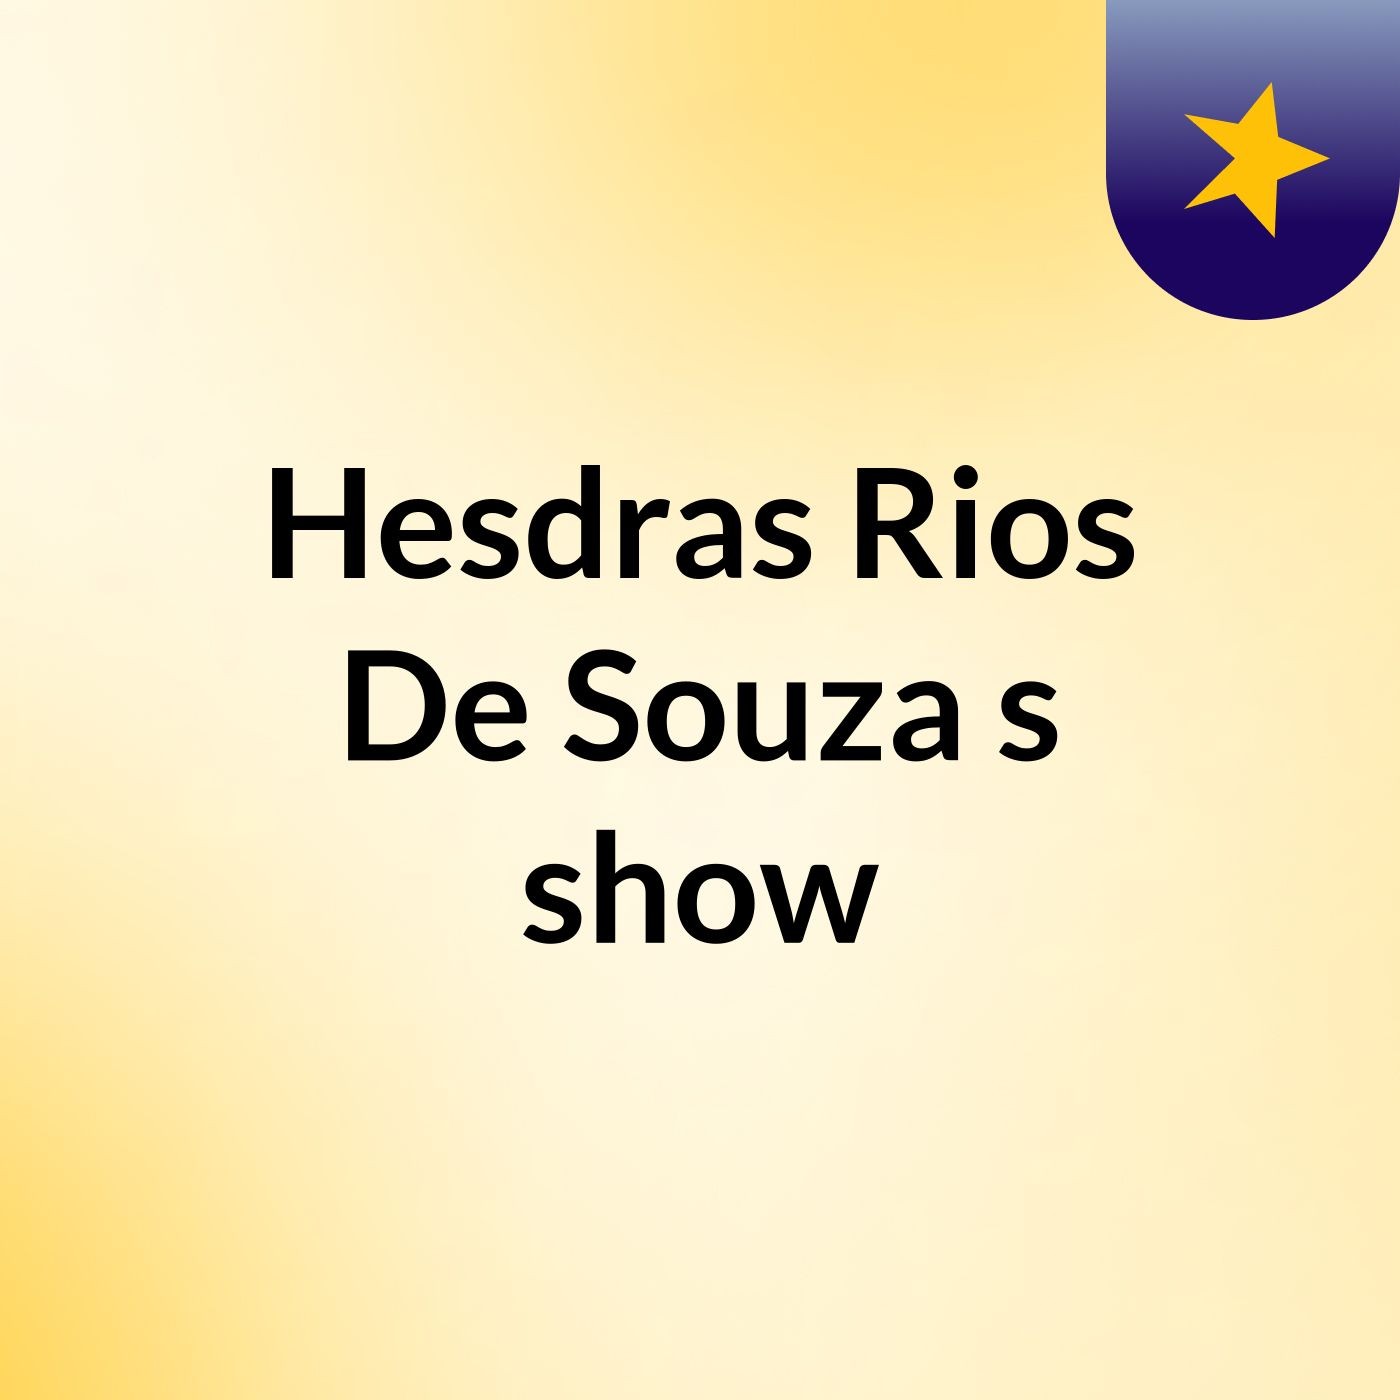 Hesdras Rios De Souza's show